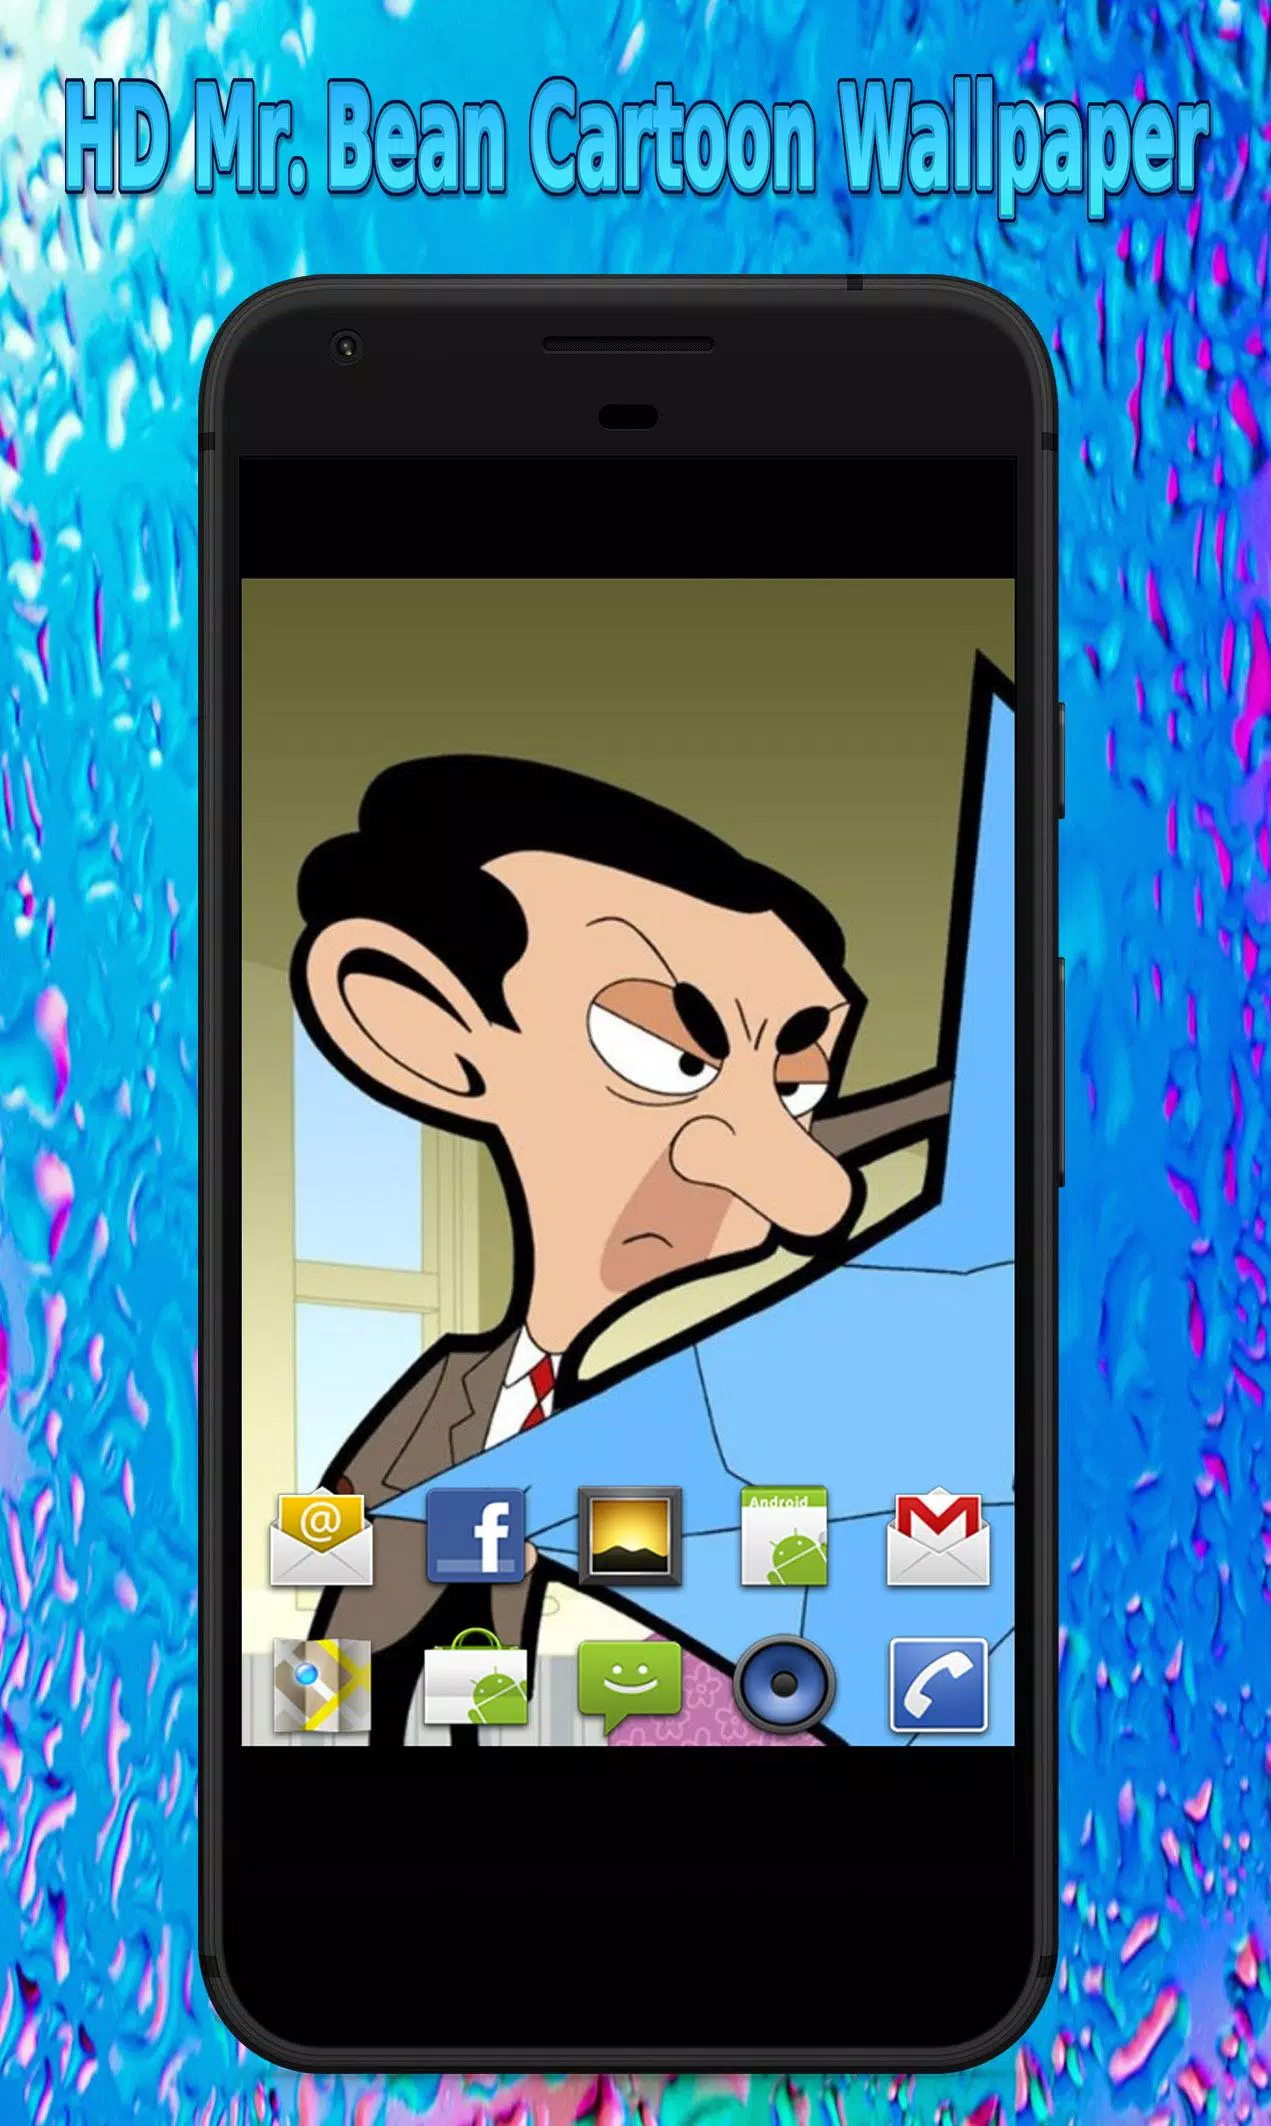 HD Mr. Bean Cartoon Wallpaper APK per Android Download